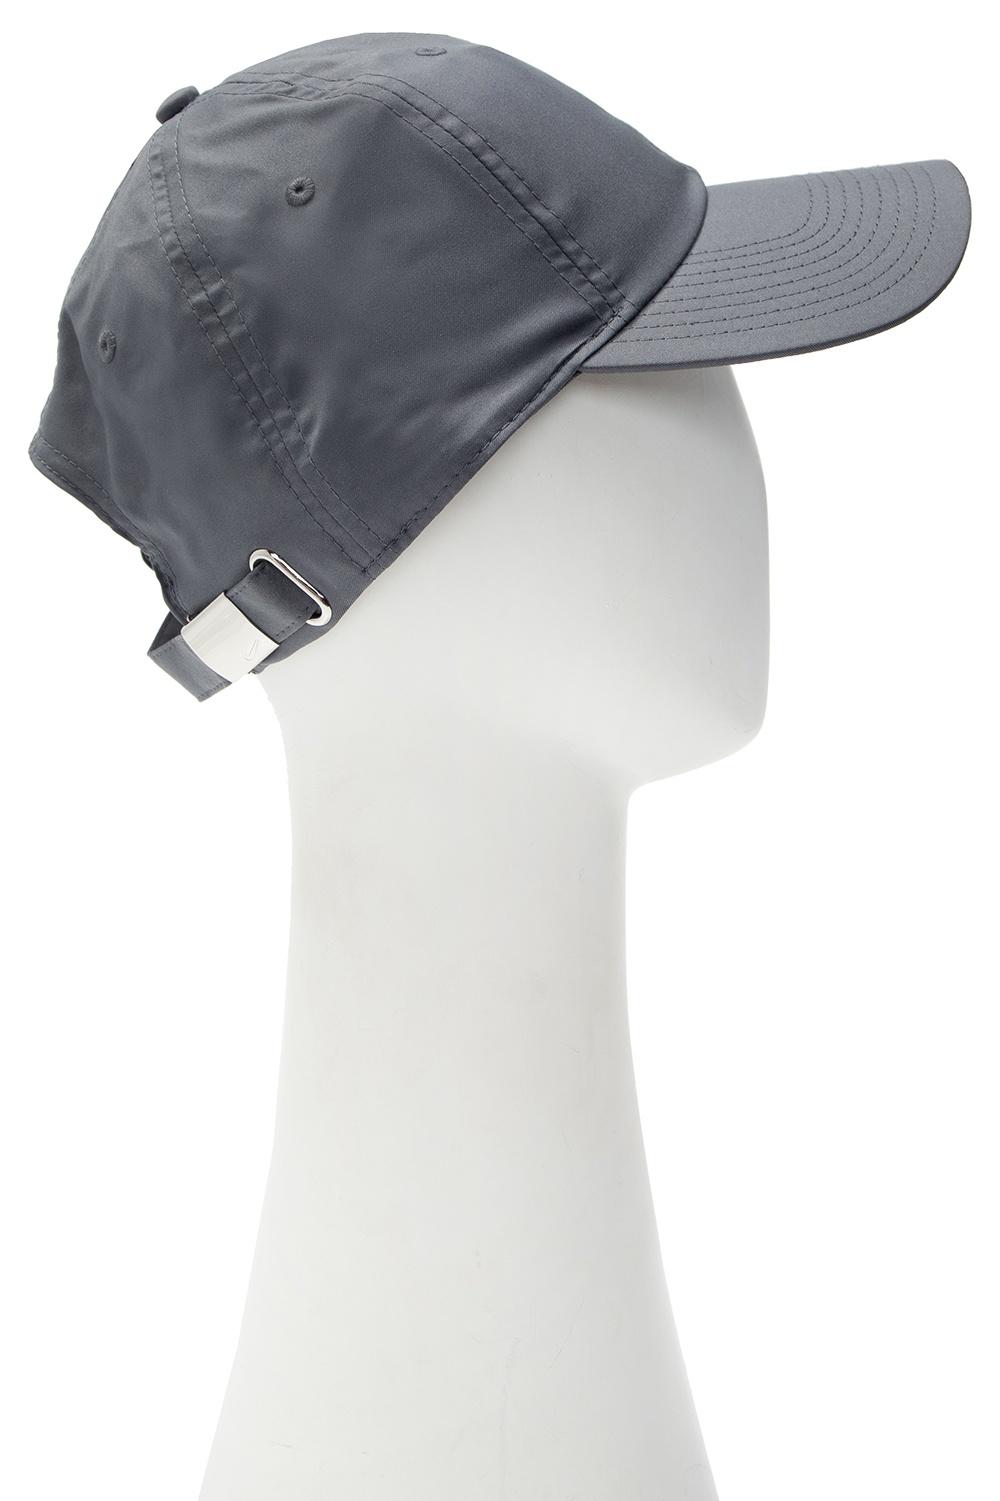 Nike H86 Metal Swoosh Cap Baseball Caps in Dark Grey/ Metallic Silver  (Gray) for Men - Save 28% - Lyst